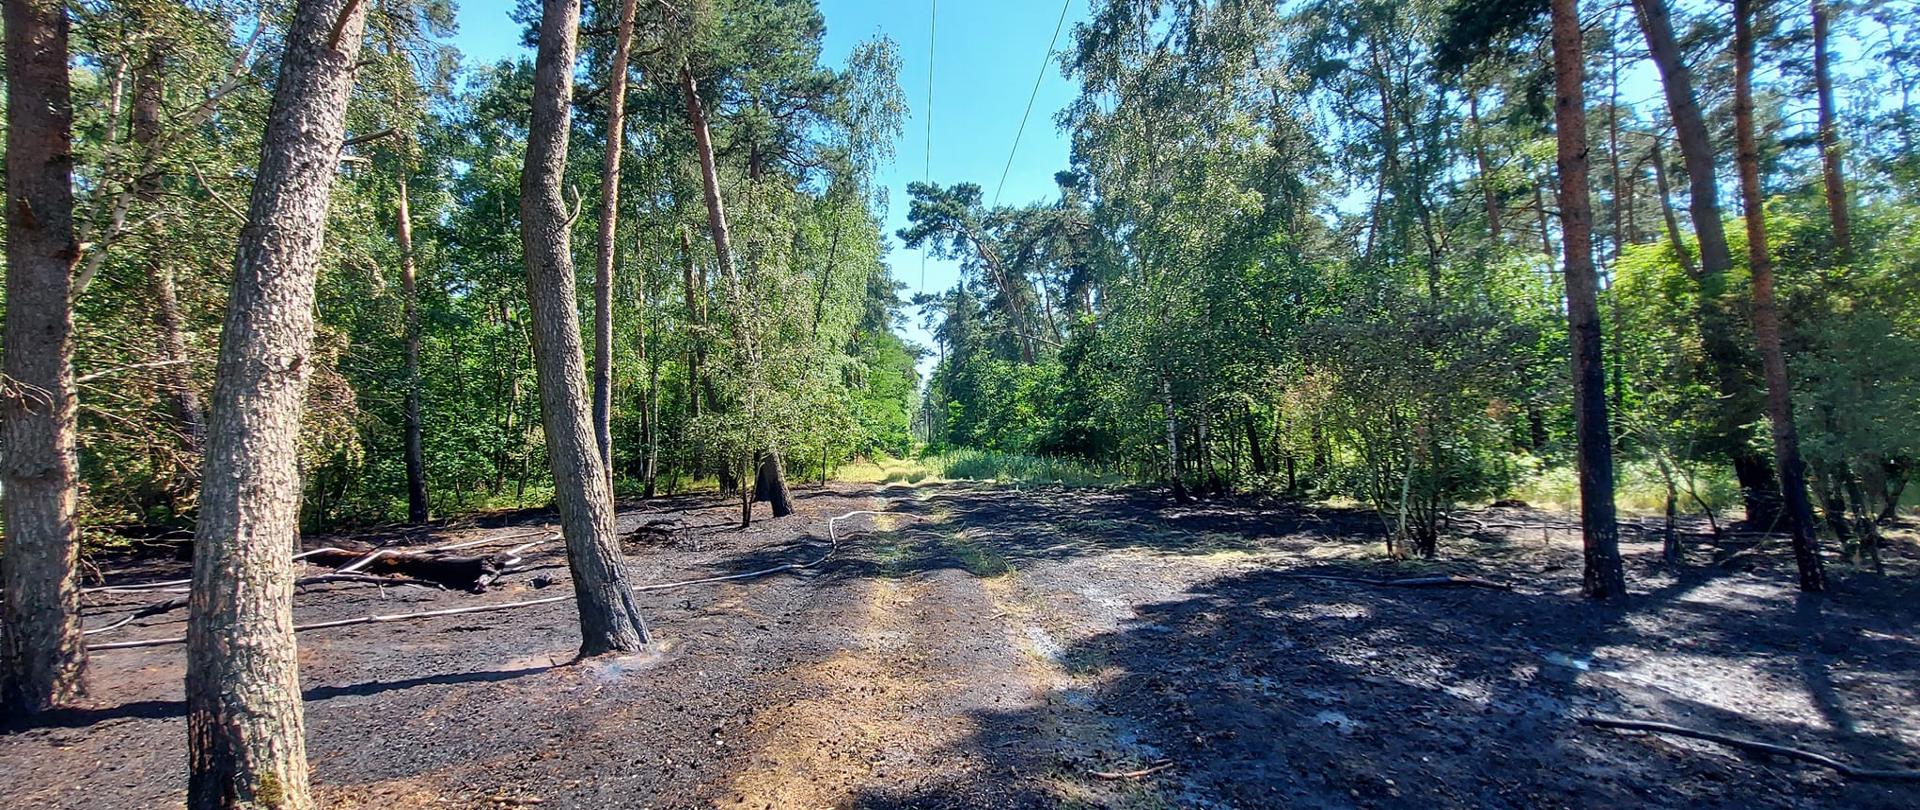 Widać spalone poszycie leśne, w pobliżu są drzewa